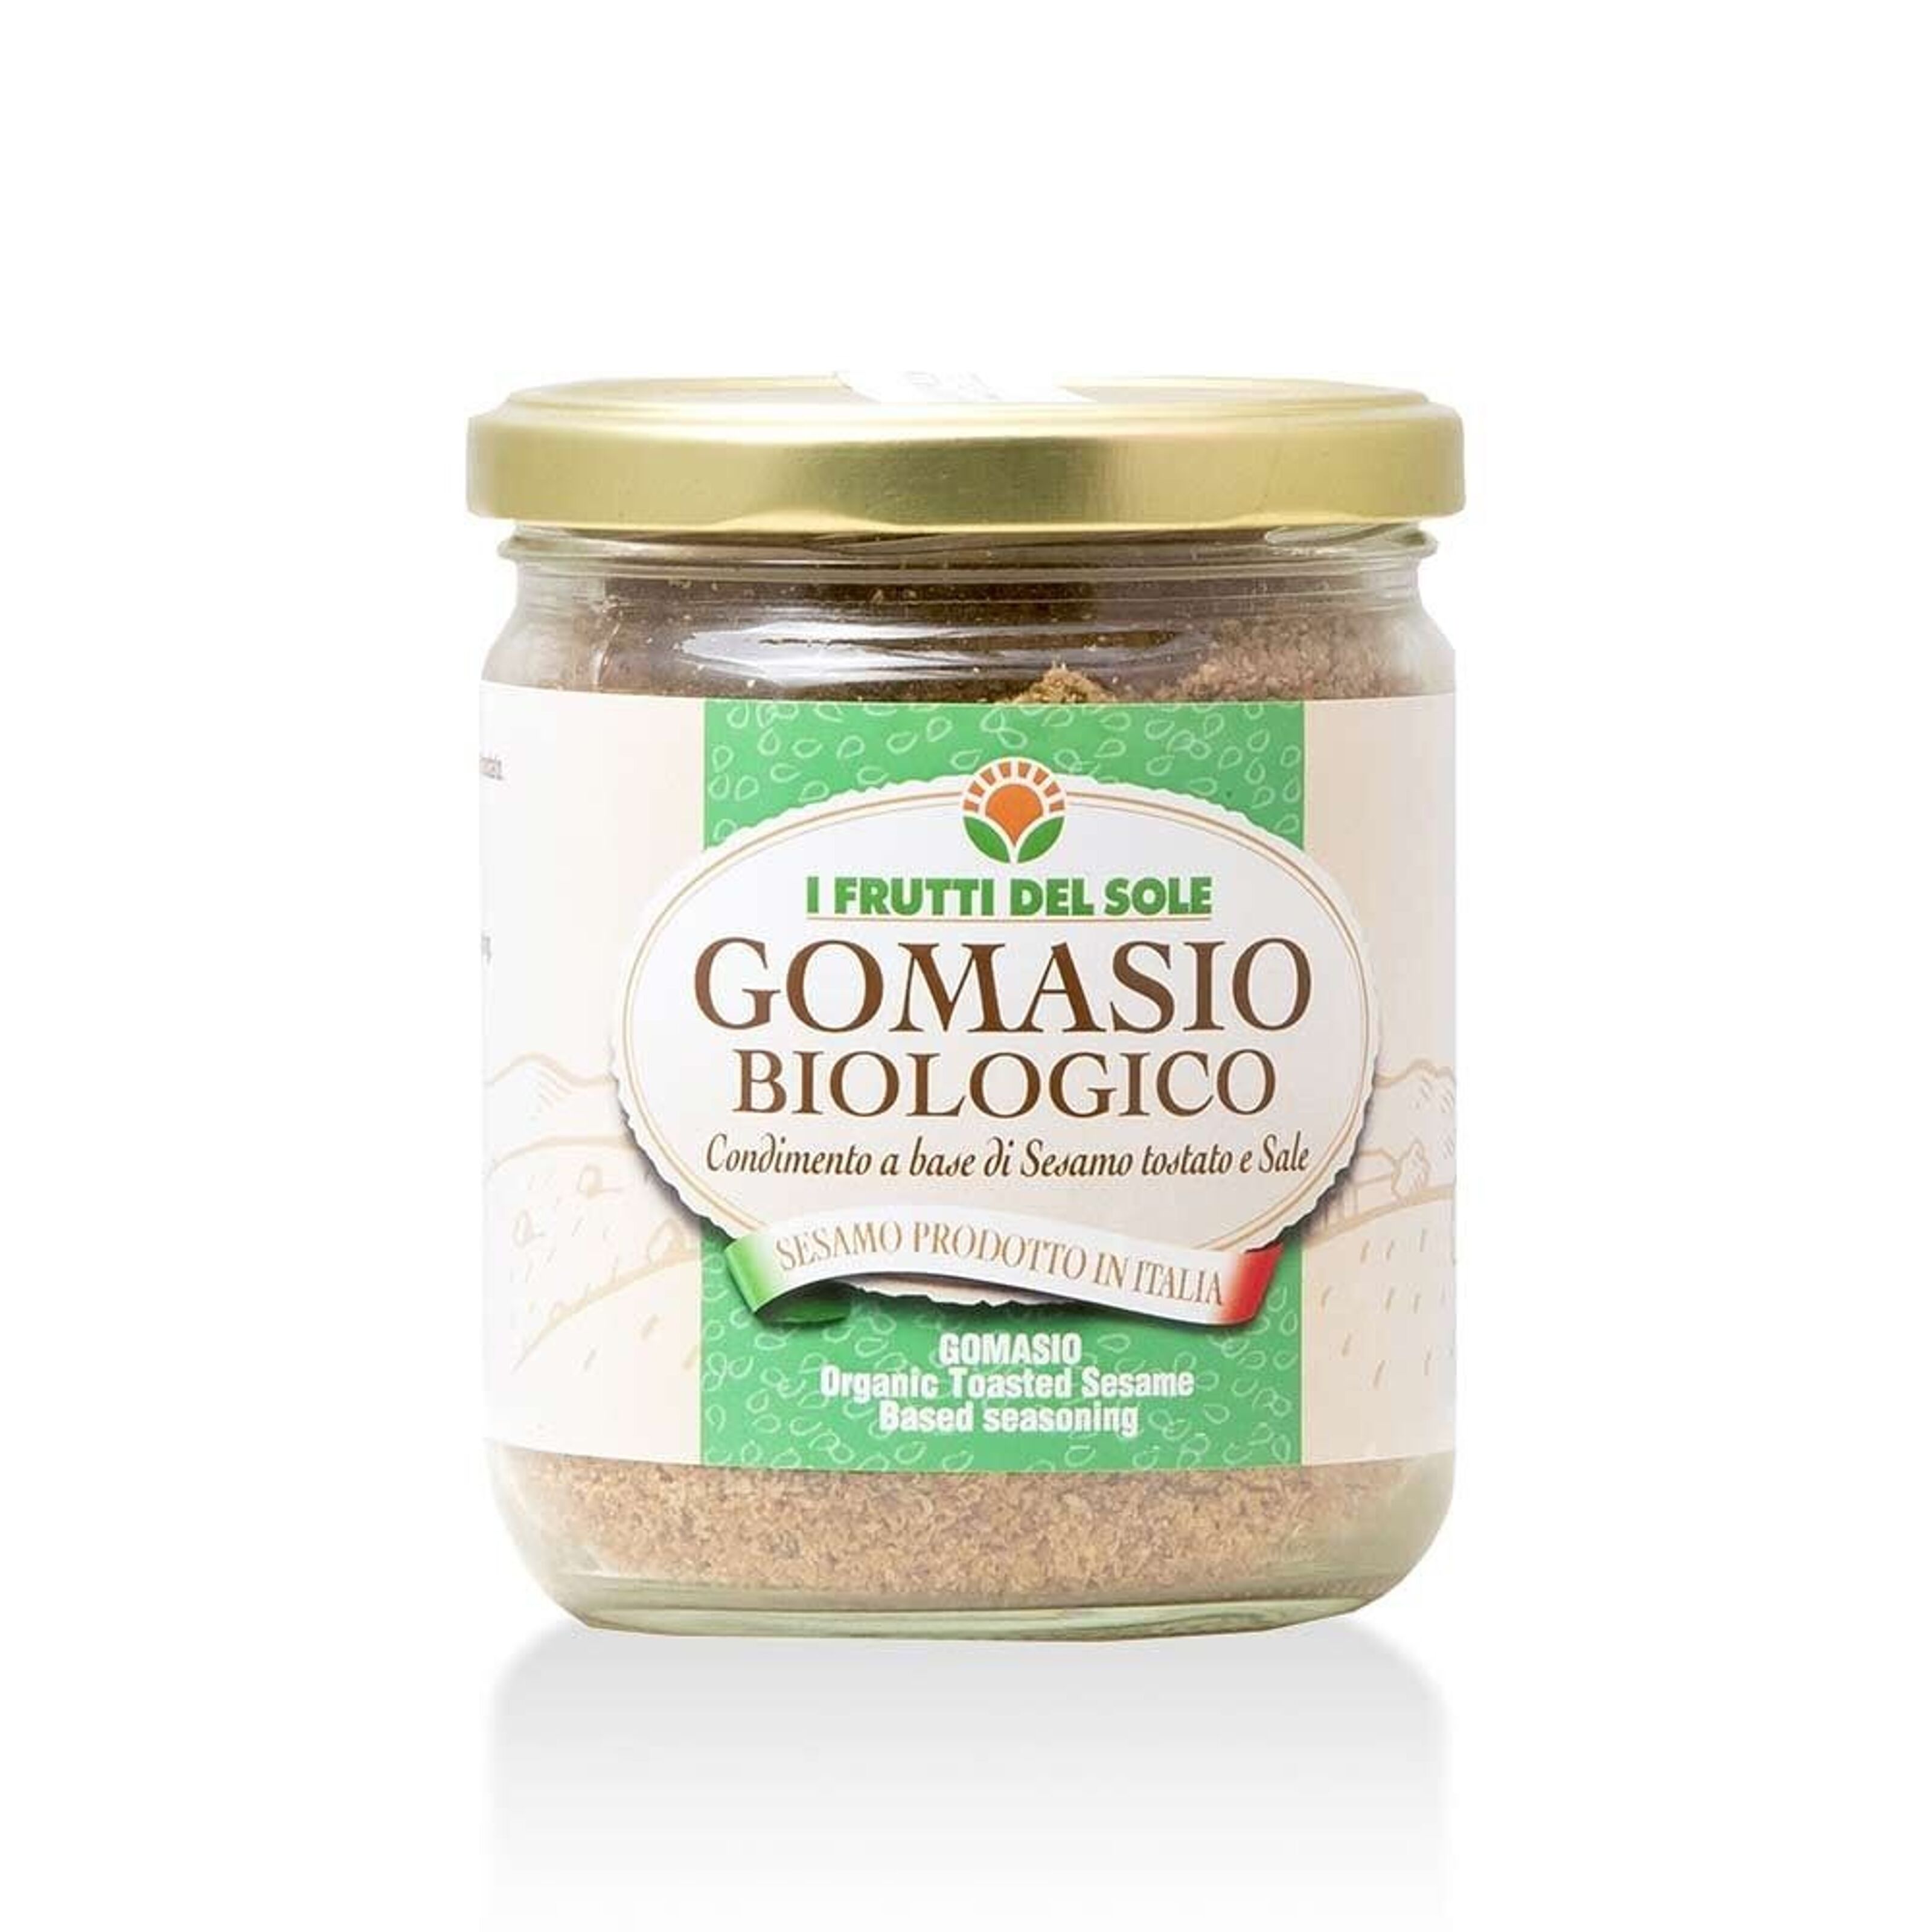 Gomasio Bio, Condiments